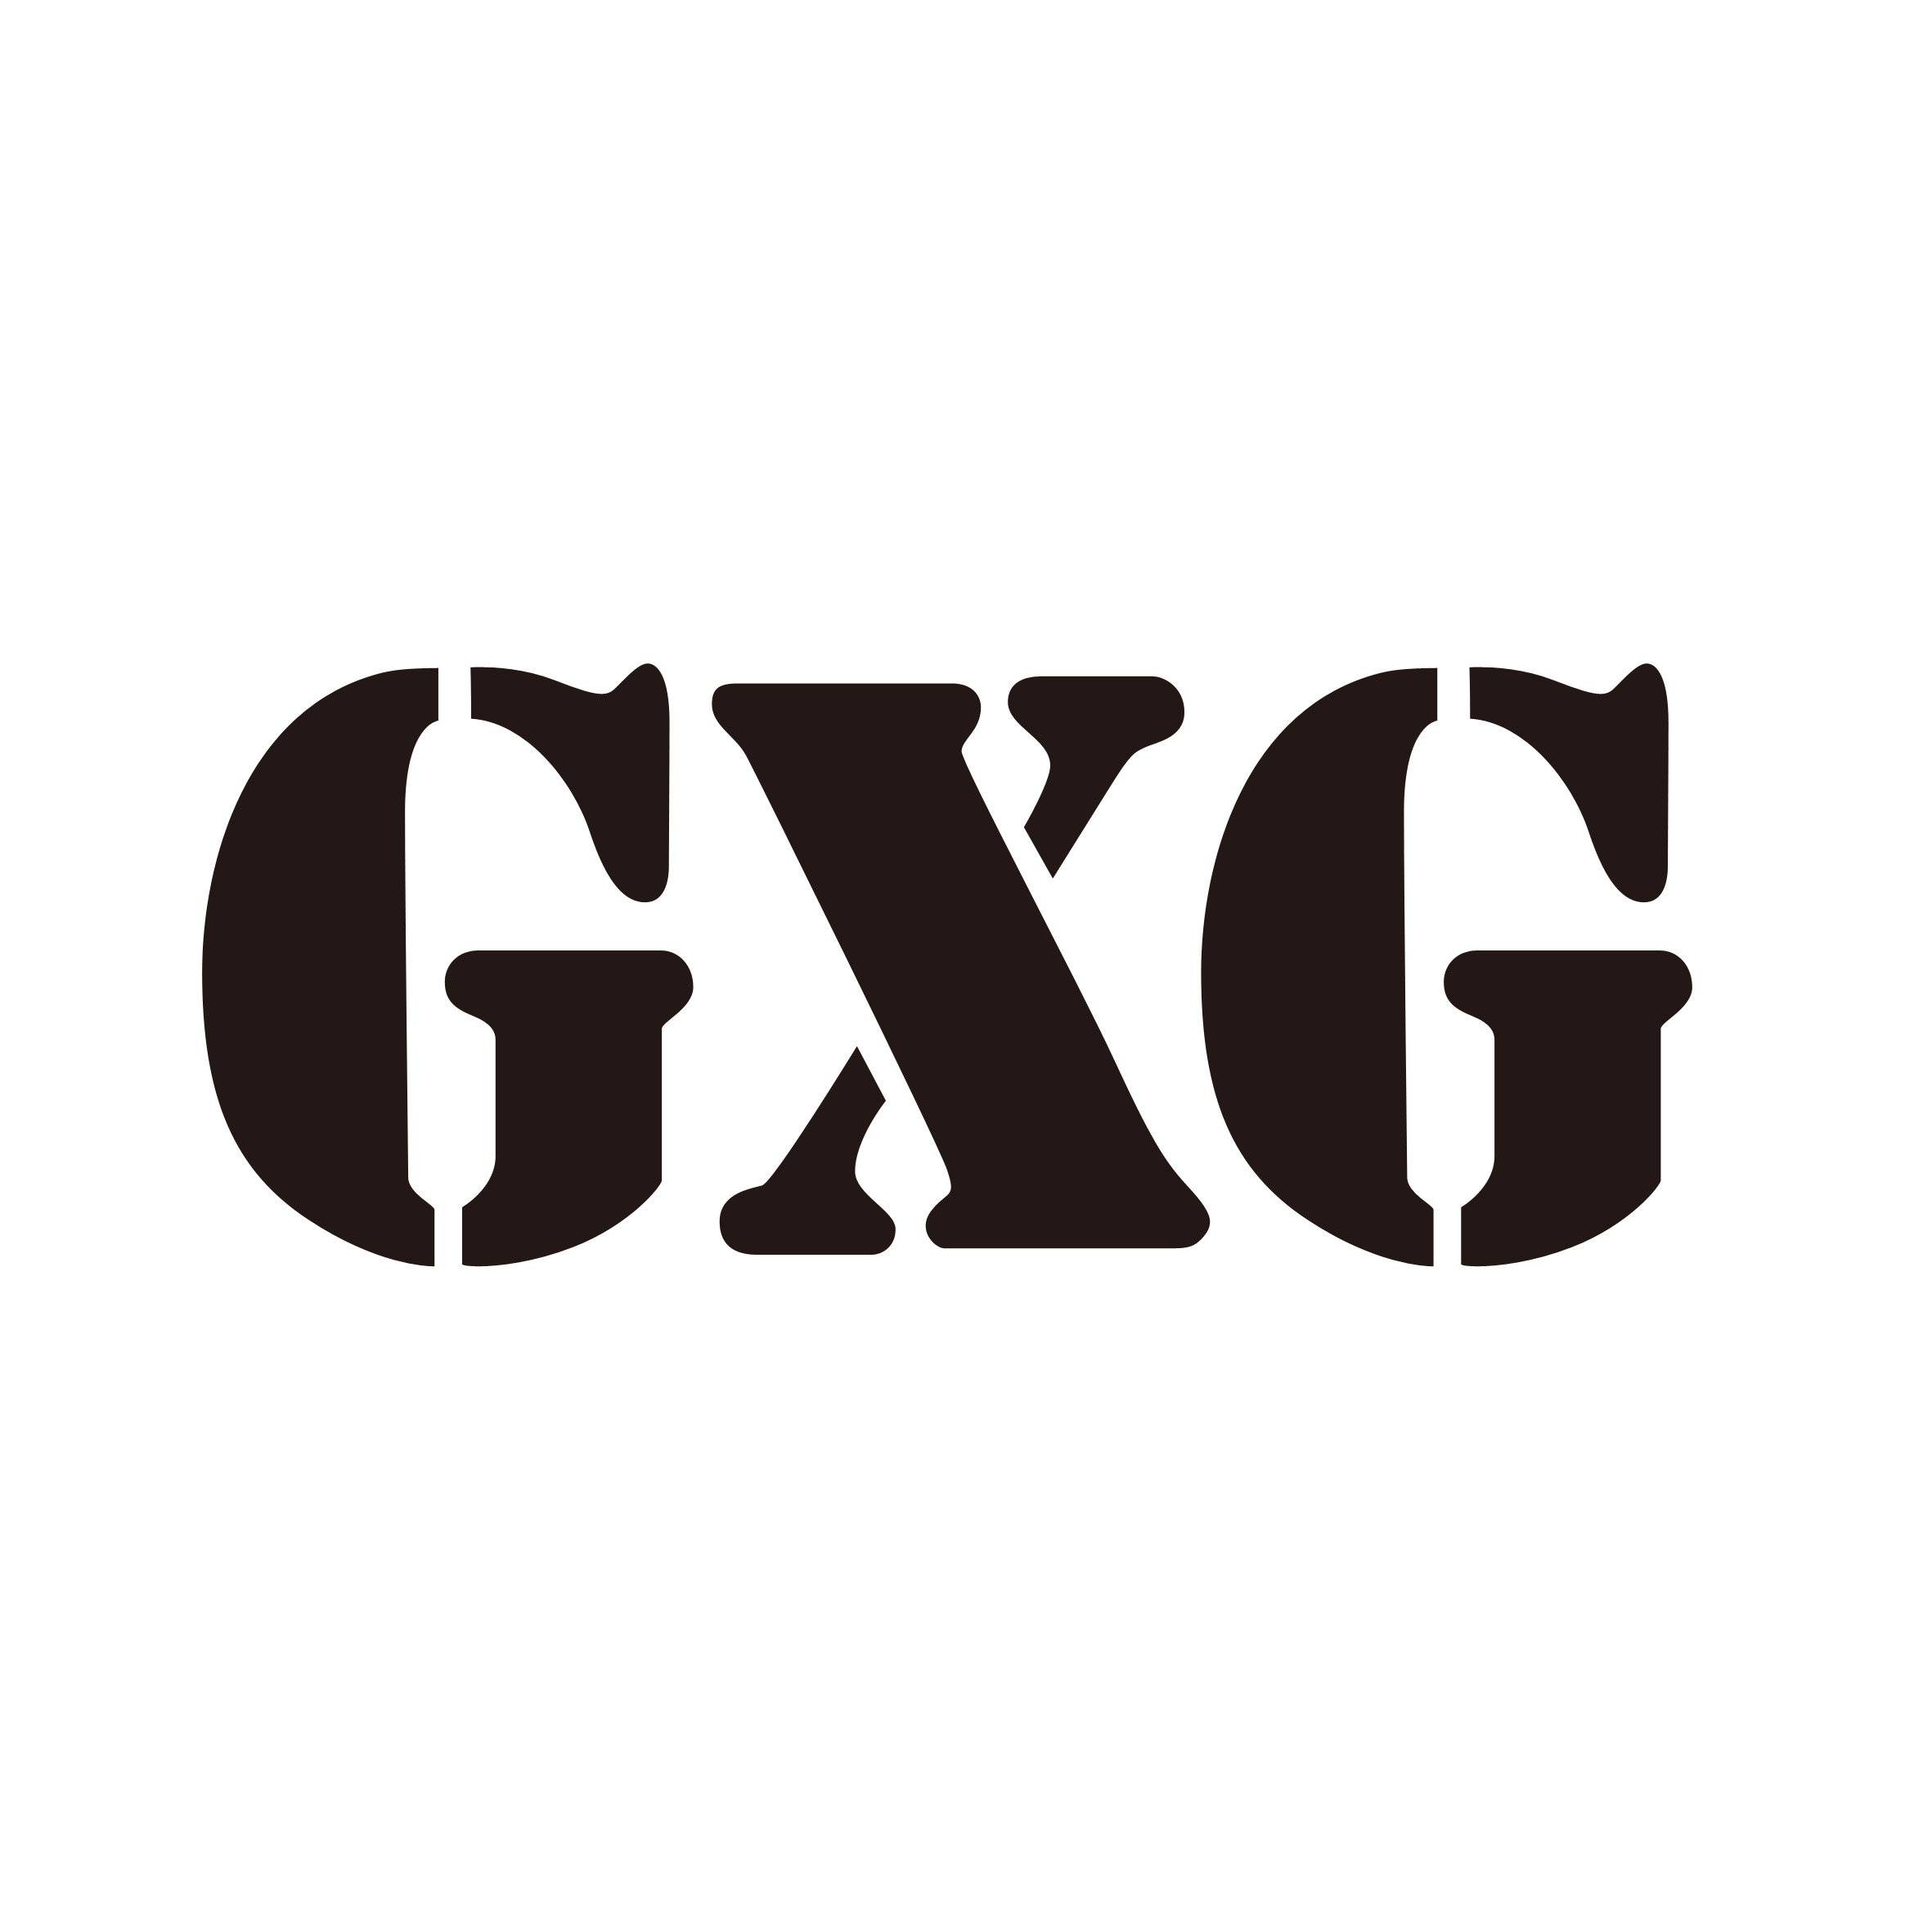 侃一侃国内的品牌——GXG